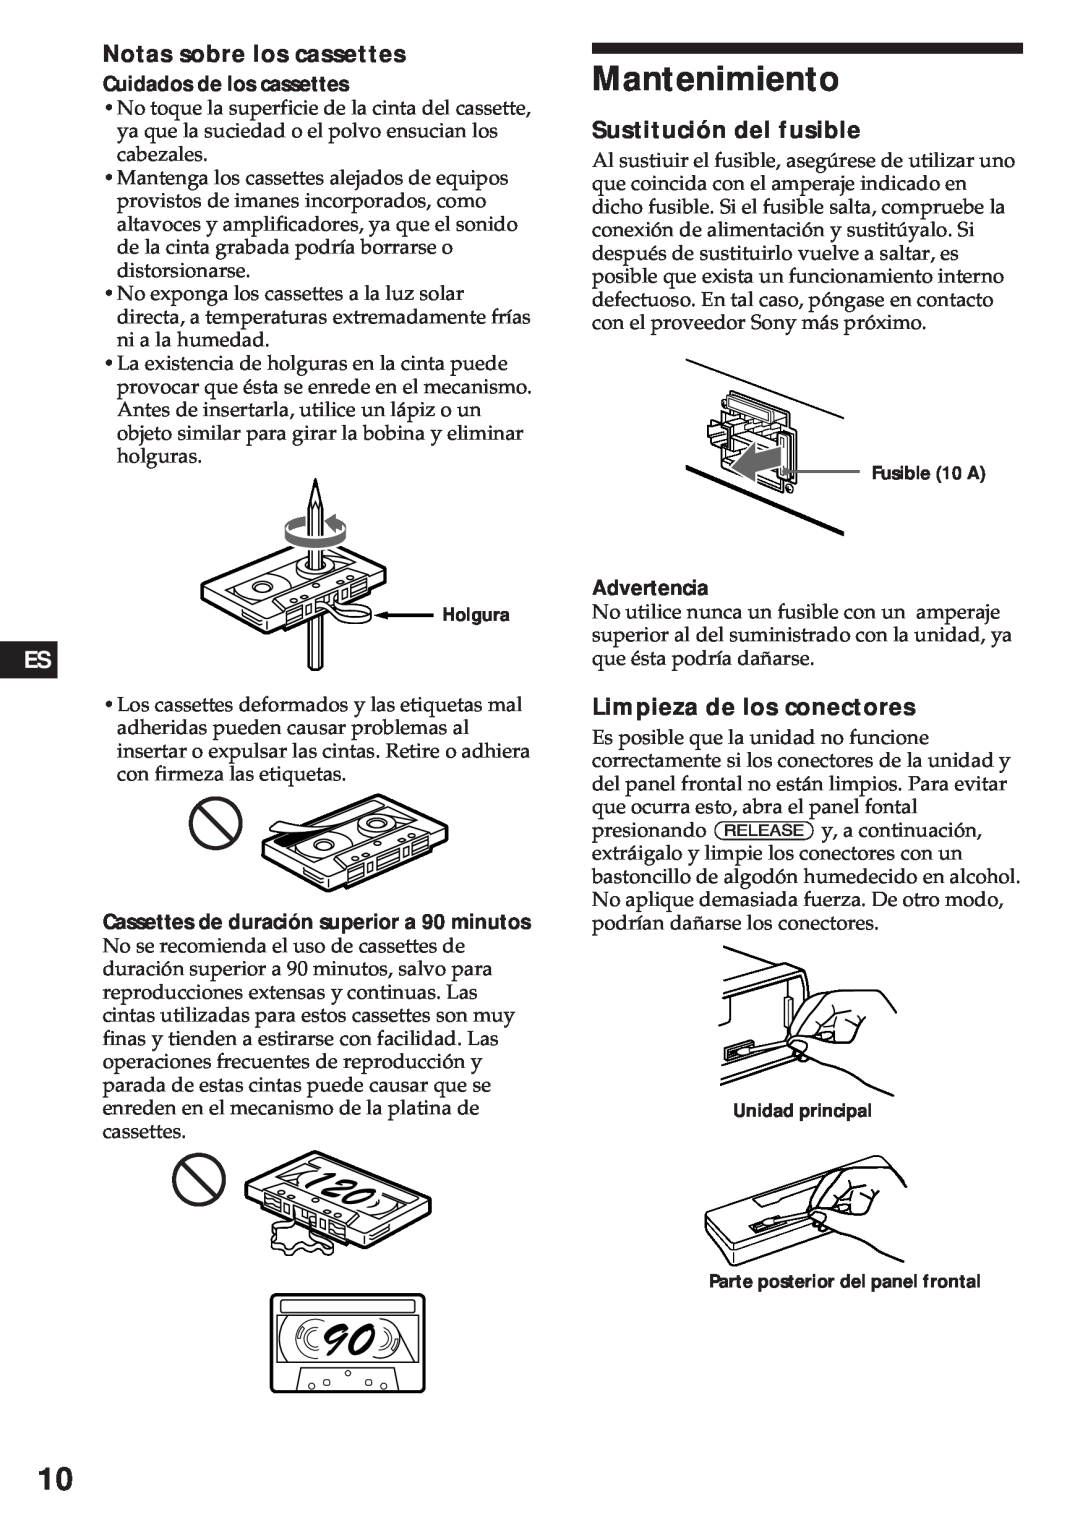 Sony XR-3750 Mantenimiento, Notas sobre los cassettes, Sustitución del fusible, Limpieza de los conectores, Advertencia 